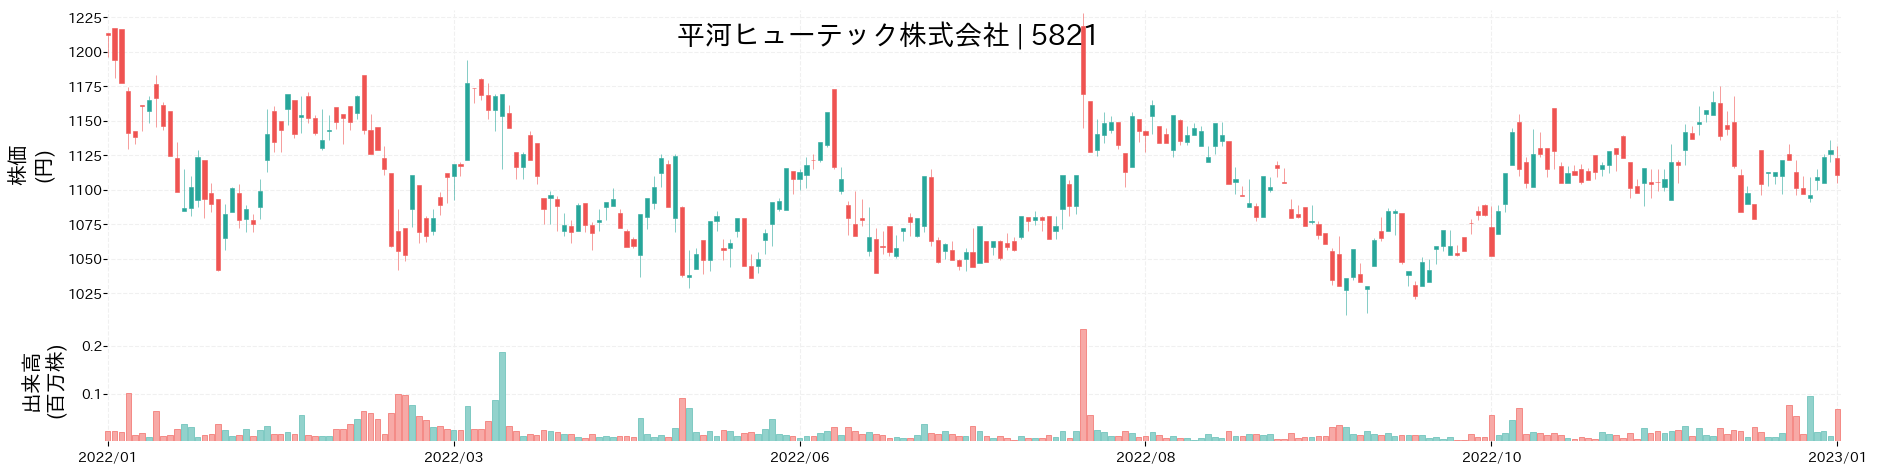 平河ヒューテックの株価推移(2022)